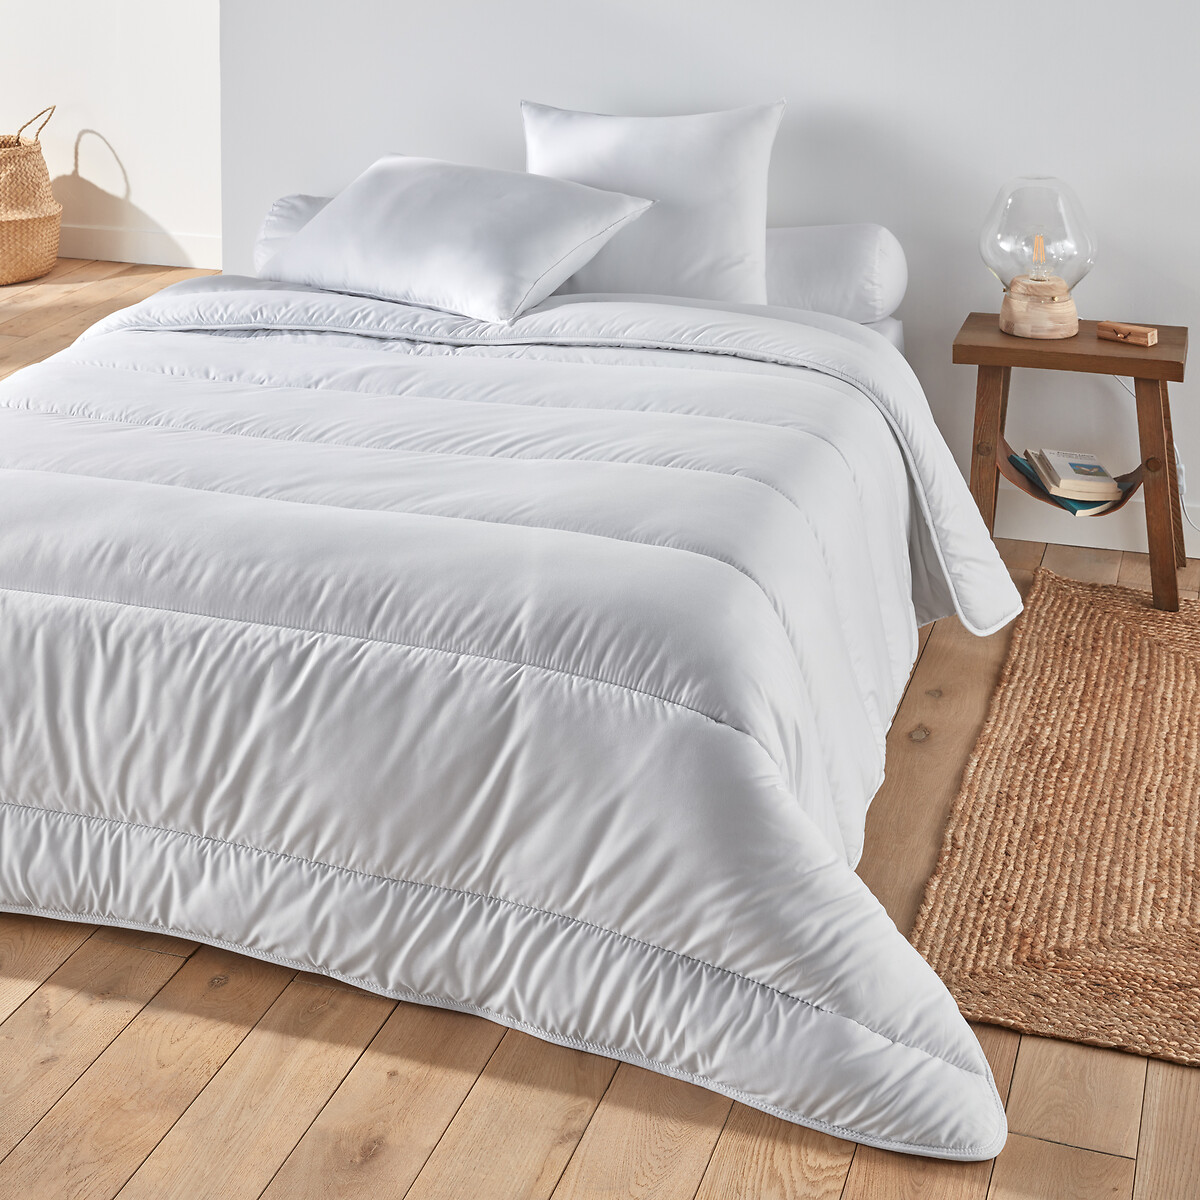 Одеяло Синтетическое с обработкой BI-OME 300 гм 140 x 200 см белый